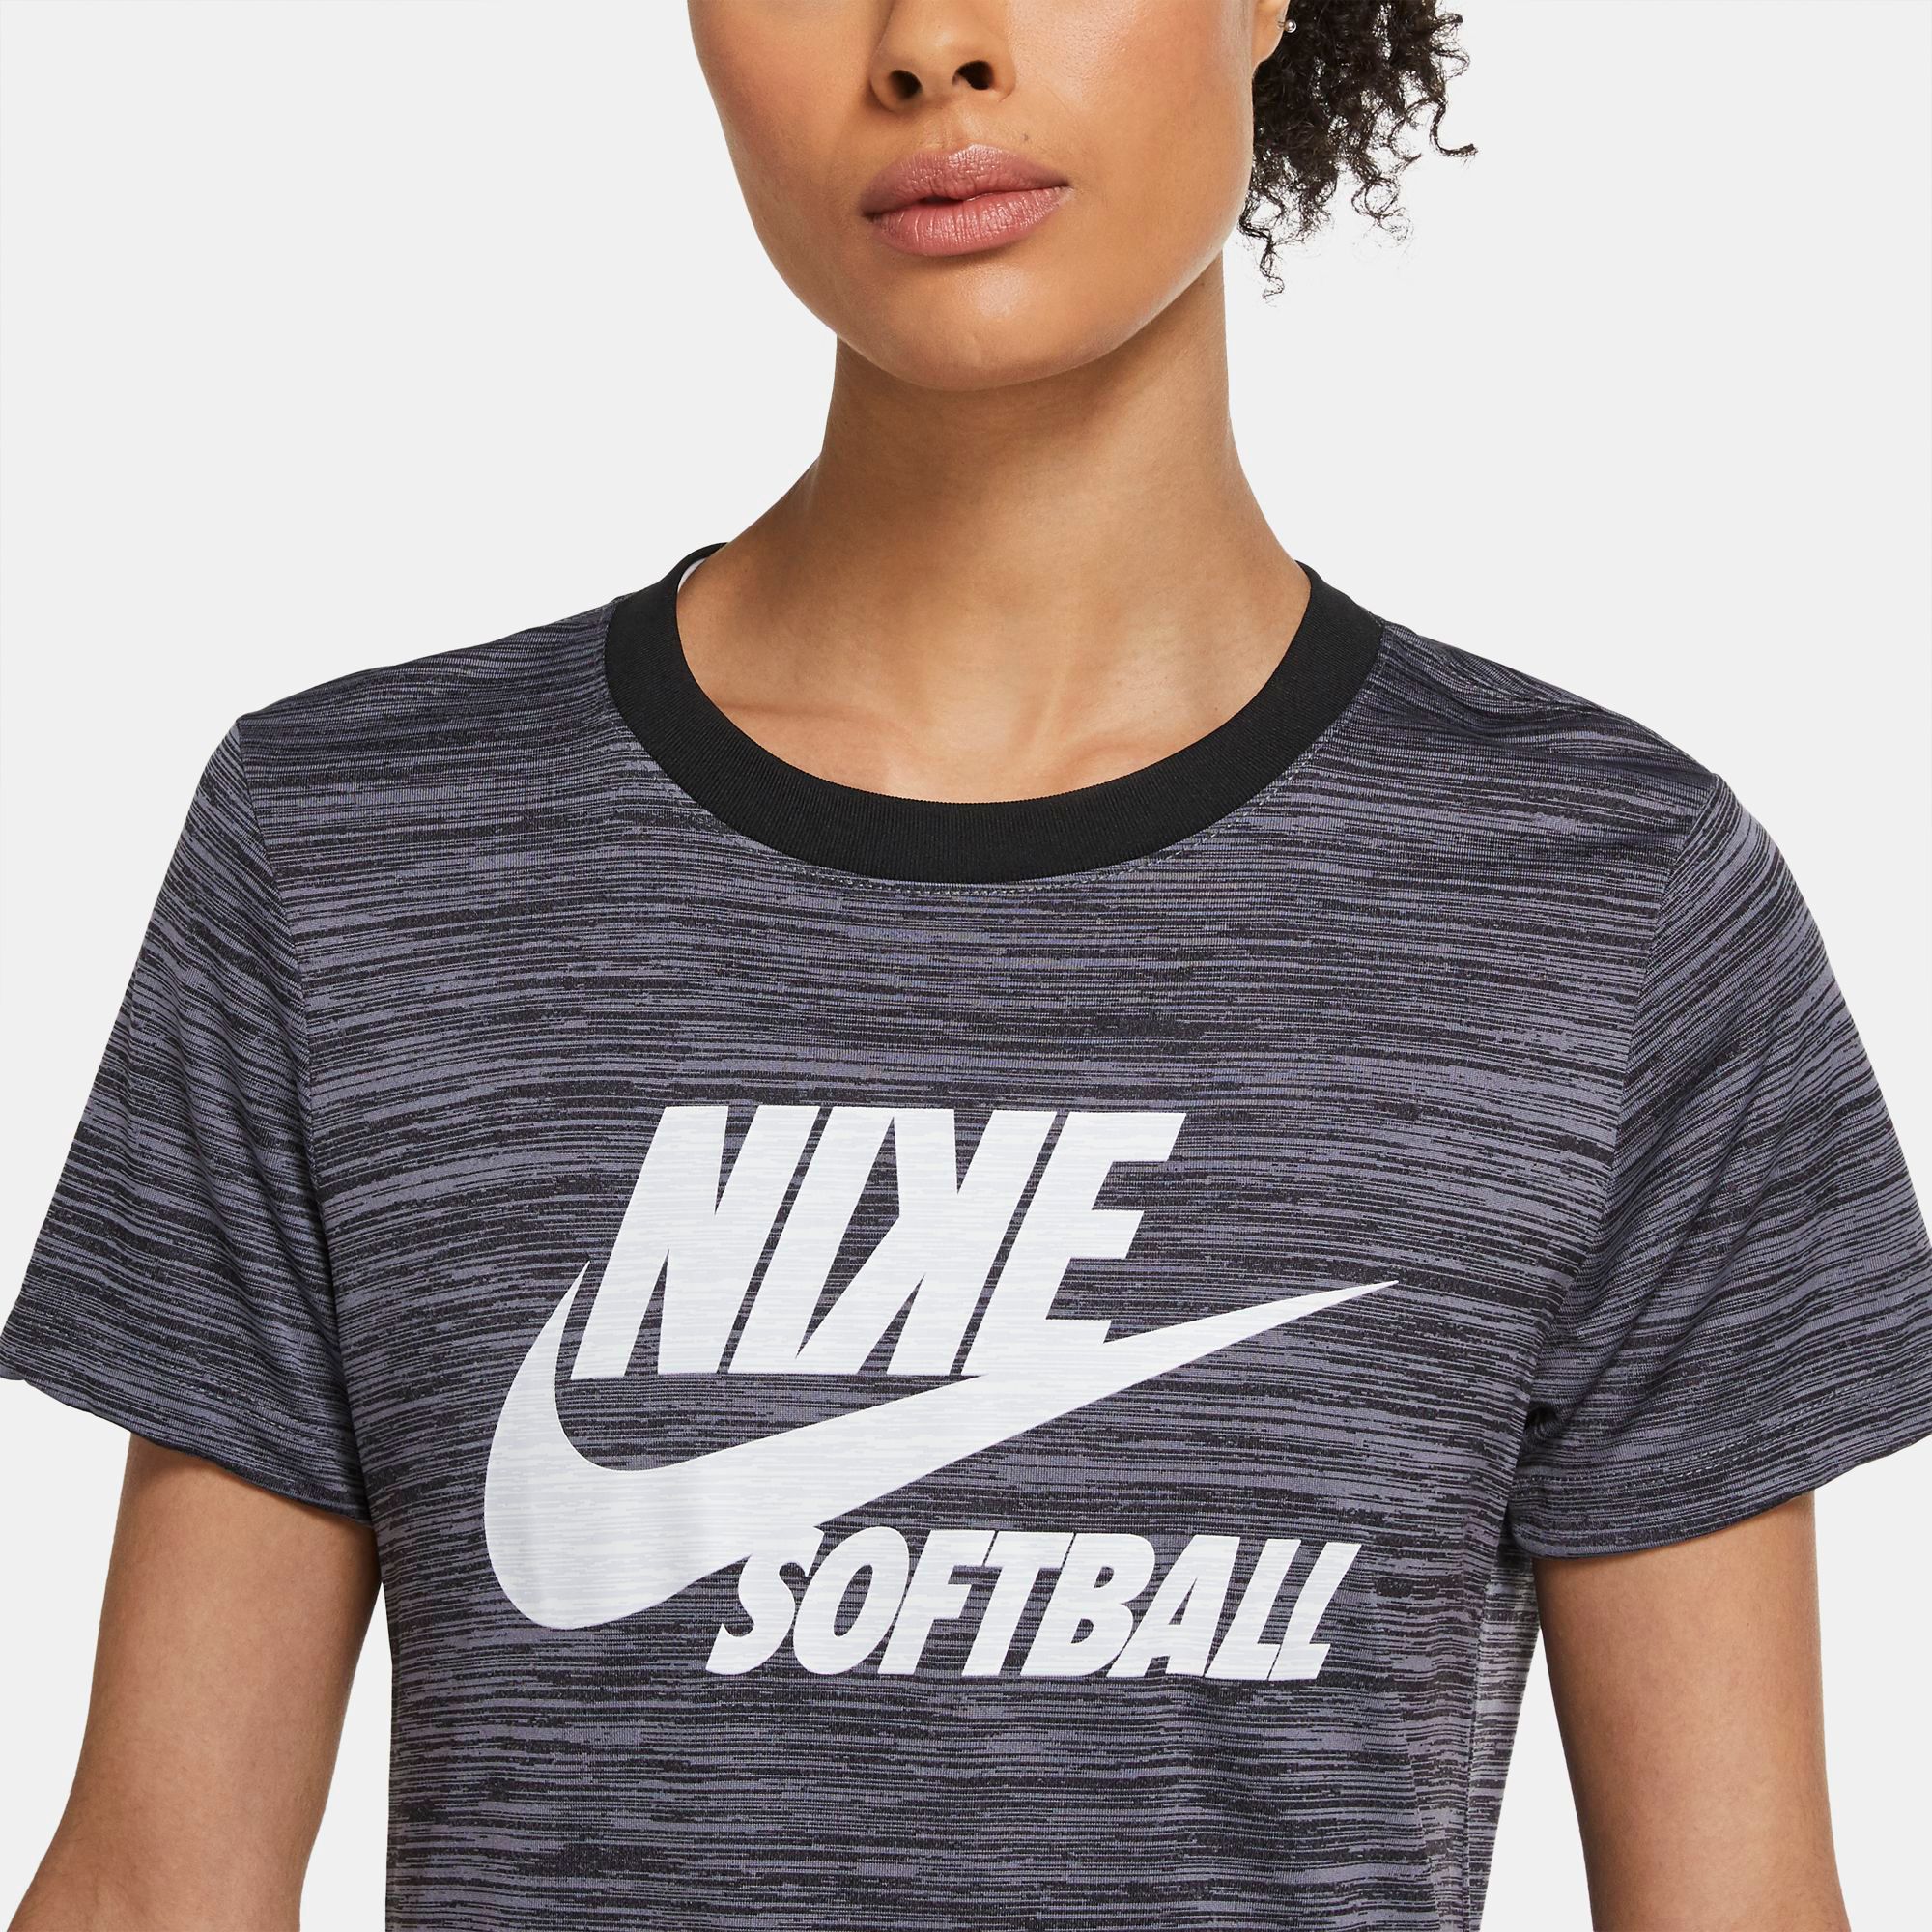 Dick's Sporting Goods Nike Women's Velocity Softball T-Shirt | The